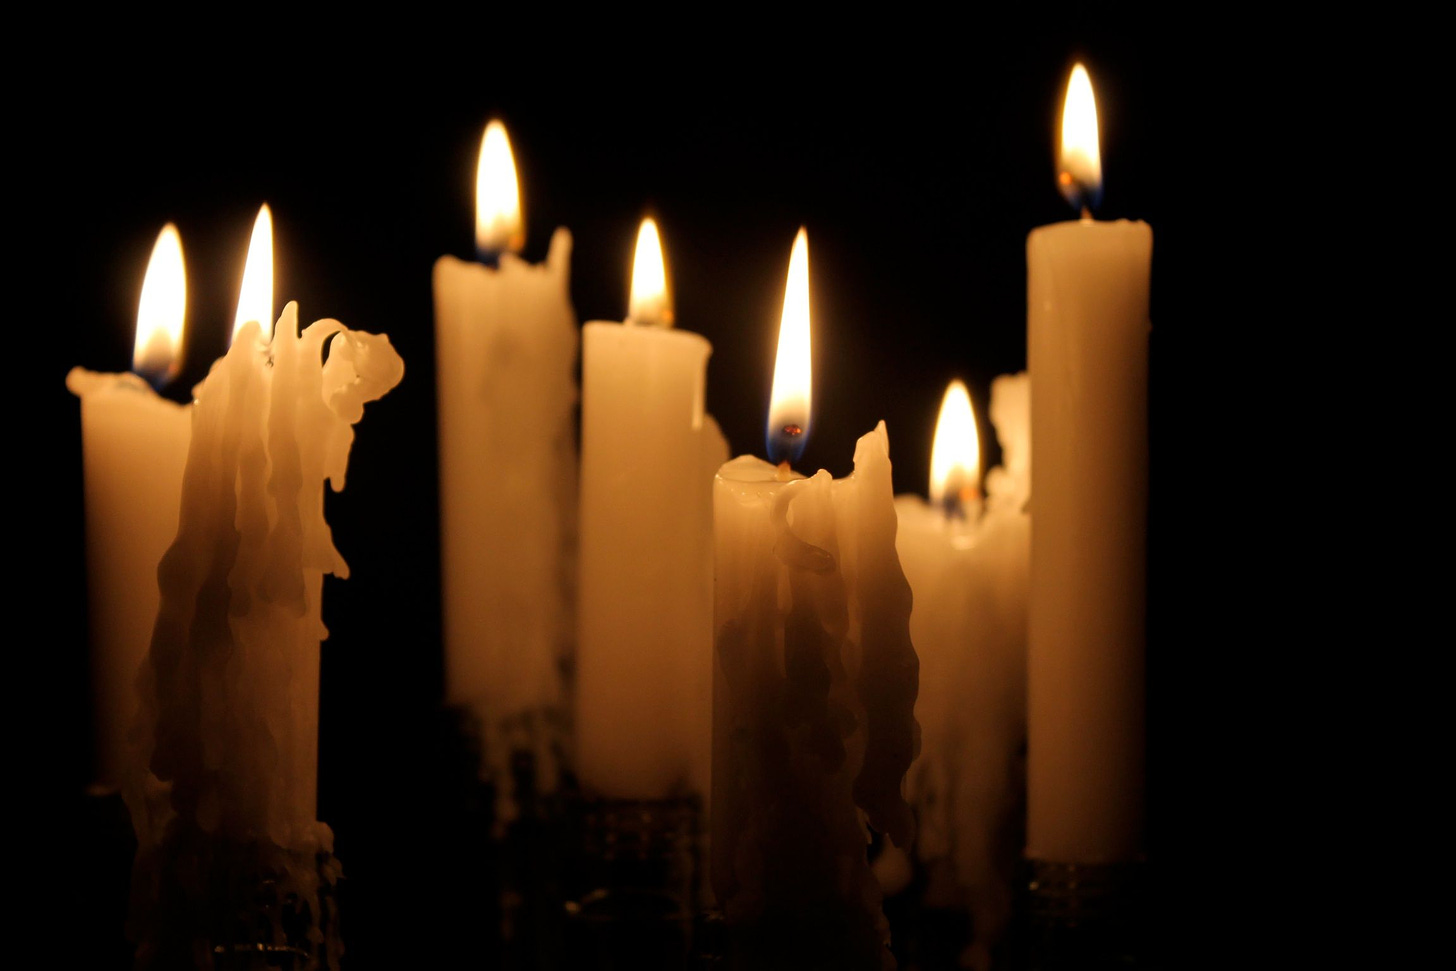 Candles in the dark | Candle in the dark, Candle photography dark, Burning  candle photography